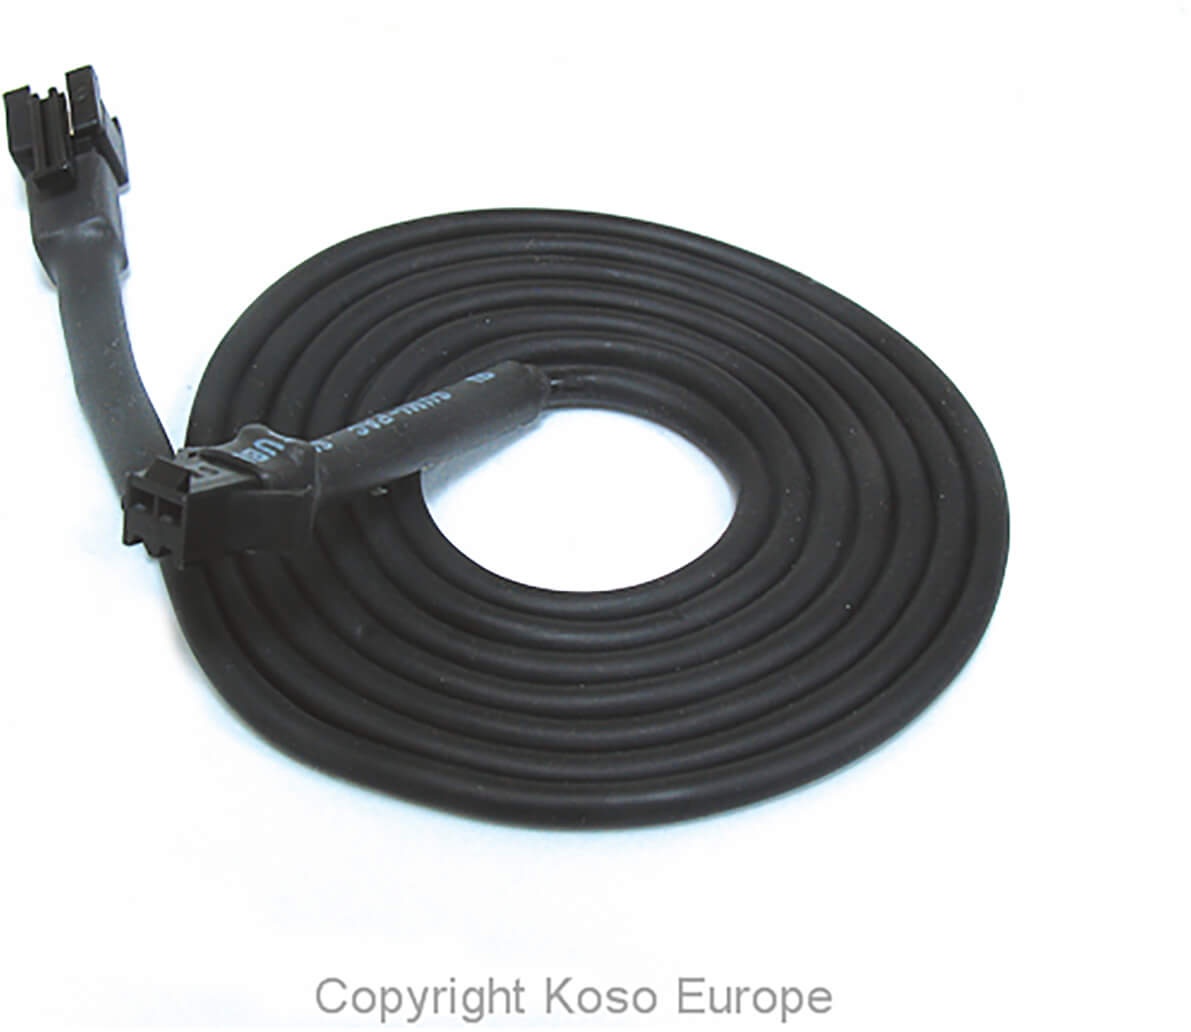 KOSO Kabel fuer Temperatursensor 1 Meter, (schwarzer Stecker), weiss, Größe 100 cm